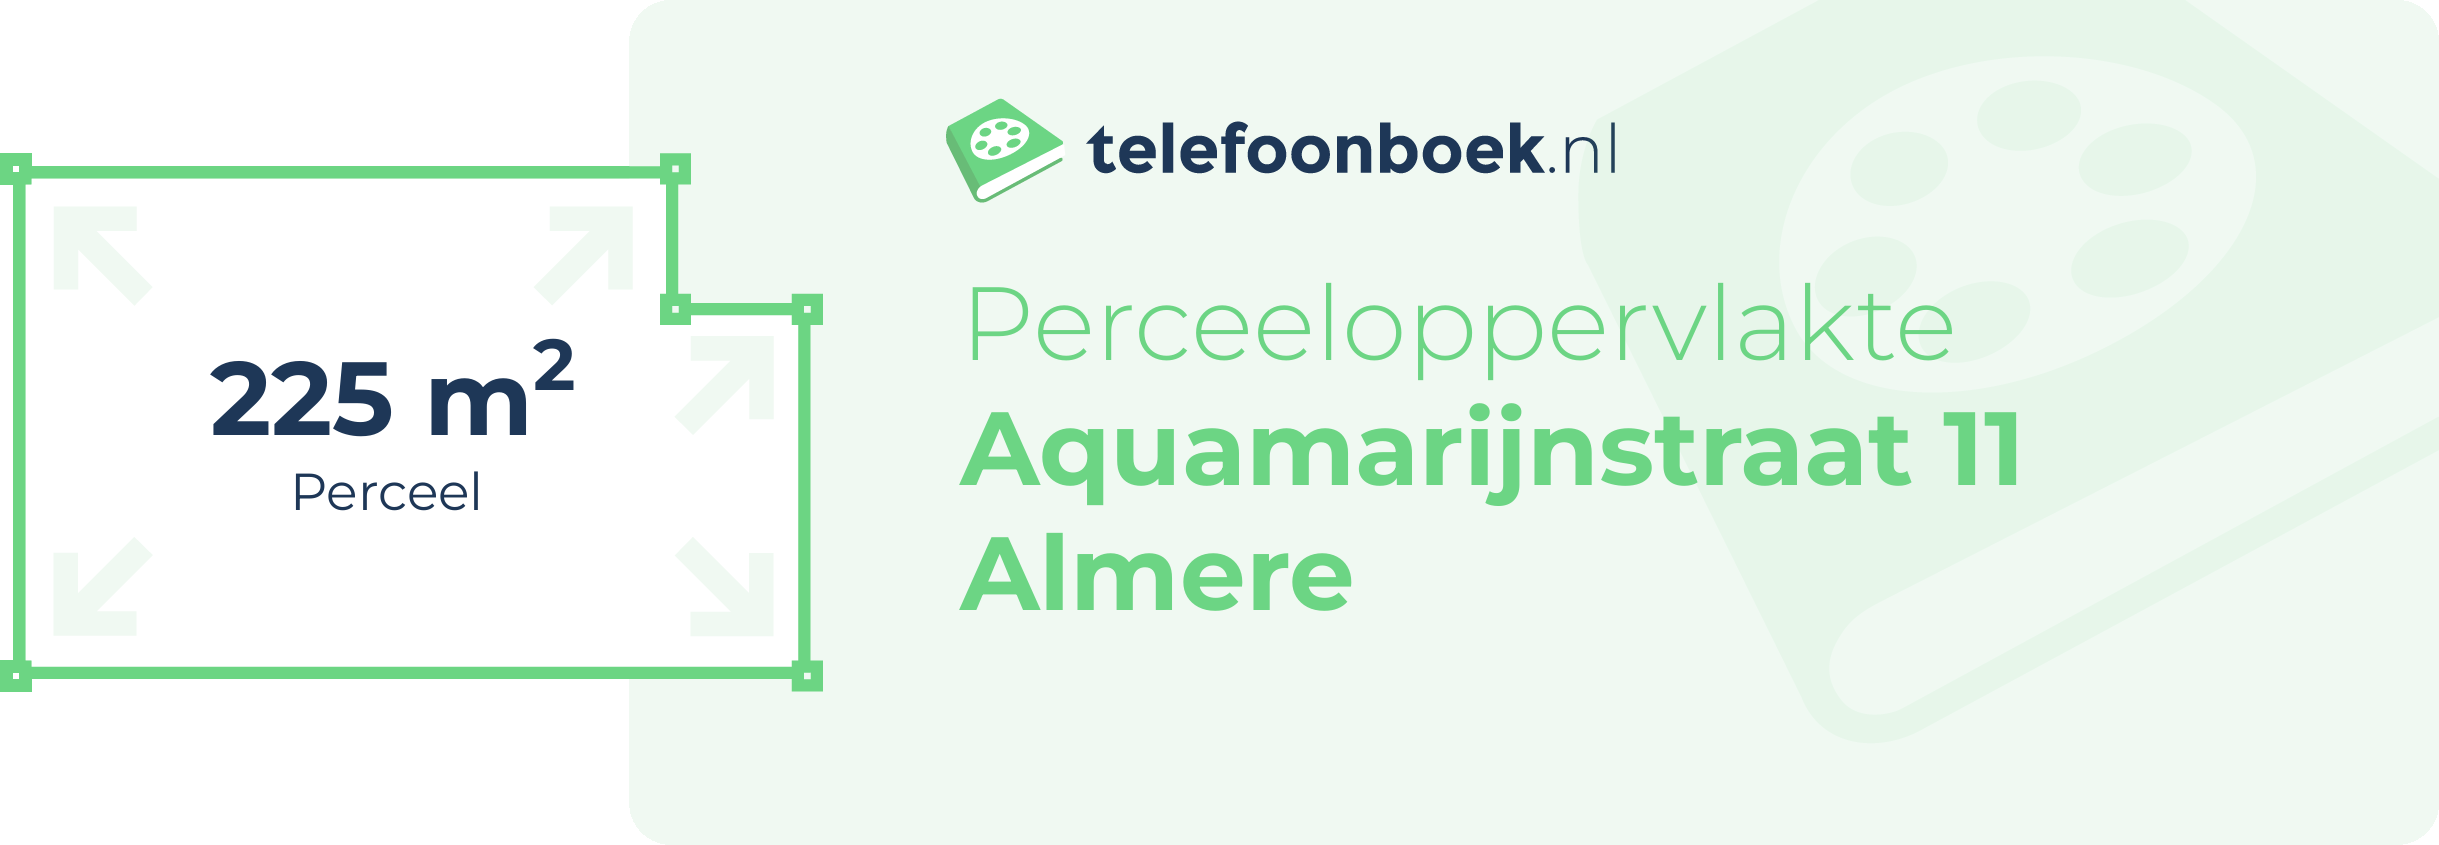 Perceeloppervlakte Aquamarijnstraat 11 Almere